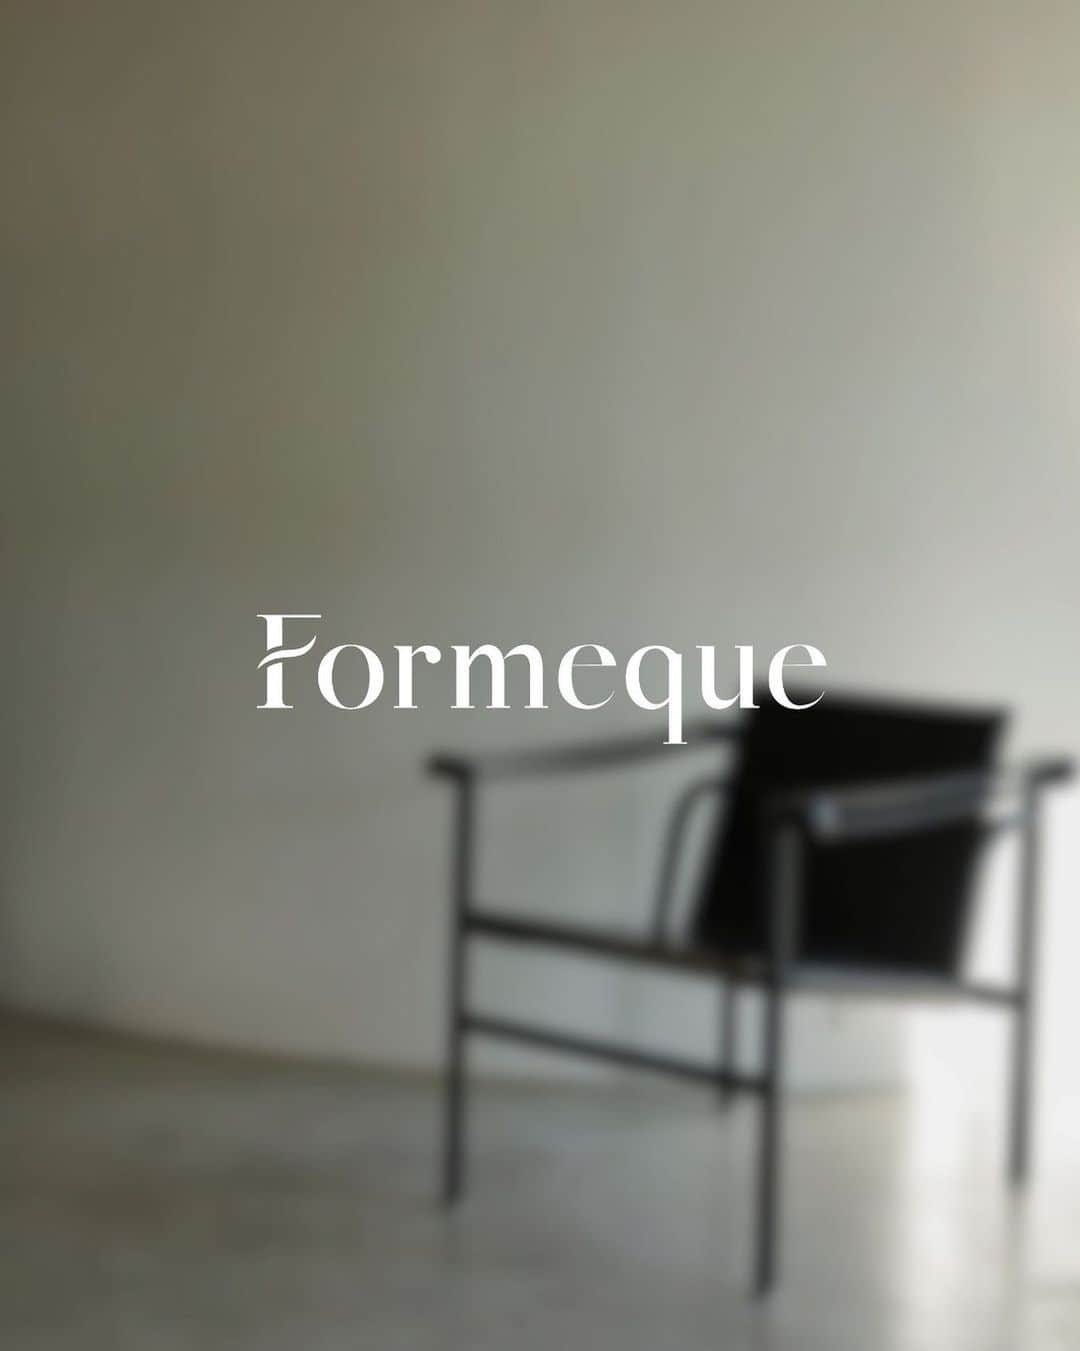 かほこ。のインスタグラム：「ㅤㅤㅤㅤㅤㅤㅤㅤㅤㅤㅤㅤㅤ ㅤㅤㅤㅤㅤㅤㅤㅤㅤㅤㅤㅤㅤ  ご報告です。 ㅤㅤㅤㅤㅤㅤㅤㅤㅤㅤㅤㅤㅤ この度、ディレクターとしてアパレルブランド Formeque (フォルミーク) を 立ち上げることとなりました。 @formeque_official  ㅤㅤㅤㅤㅤㅤㅤㅤㅤㅤㅤㅤㅤ このような機会がいただけたのも、 普段から見てくださっている皆様のお陰です。 本当にありがとうございます。 ㅤㅤㅤㅤㅤㅤㅤㅤㅤㅤㅤㅤㅤ Formeque 姿・かたちを表す "forme" と 唯一無二を意味する "unique" を組み合わせ、 「流行り廃りに流されない唯一無二のスタイルを」 という想いを込めました。 また、formeには "for me -自分のために- "という 意味も込められています。 ㅤㅤㅤㅤㅤㅤㅤㅤㅤㅤㅤㅤㅤ 流行はどんどん変わっていくし 年齢を重ねるたび好きなものも変わっていく。 その変化に悩むこともあるけど、 それでも自分の「好き」を大切にしてもらいたい。 ㅤㅤㅤㅤㅤㅤㅤㅤㅤㅤㅤㅤㅤ Formequeはベーシックなお洋服が多いですが シルエットにこだわっています。 街中で歩いてる時、ふとウィンドウに映る姿を見て 「あ、なんか今日の自分いいかも」と、 より自分を好きになる一着をお届けできたら幸いです。 ㅤㅤㅤㅤㅤㅤㅤㅤㅤㅤㅤㅤㅤ 一度は挫折し、諦めた夢でした。 再びチャレンジすることは大きな不安もありましたが とても素敵なチームの皆様に支えていただき ここまでたどり着くことができました。 そして同じように、見てくださる皆様がいるからこそ叶えられた夢です。 フォロワー様、チームの皆様、そしていつも支えてくれる周りのみんな。 本当に本当にありがとうございます！ ㅤㅤㅤㅤㅤㅤㅤㅤㅤㅤㅤㅤㅤ 自信を持ってお届けできるアイテムができました。 2023年11月20日より、ZOZOTOWNにて販売開始となります。 ㅤㅤㅤㅤㅤㅤㅤㅤㅤㅤㅤㅤㅤ よろしくお願いいたします☺️ ㅤㅤㅤㅤㅤㅤㅤㅤㅤㅤㅤㅤㅤ ㅤㅤㅤㅤㅤㅤㅤㅤㅤㅤㅤㅤㅤ かほこ。 ㅤㅤㅤㅤㅤㅤㅤㅤㅤㅤㅤㅤㅤ」